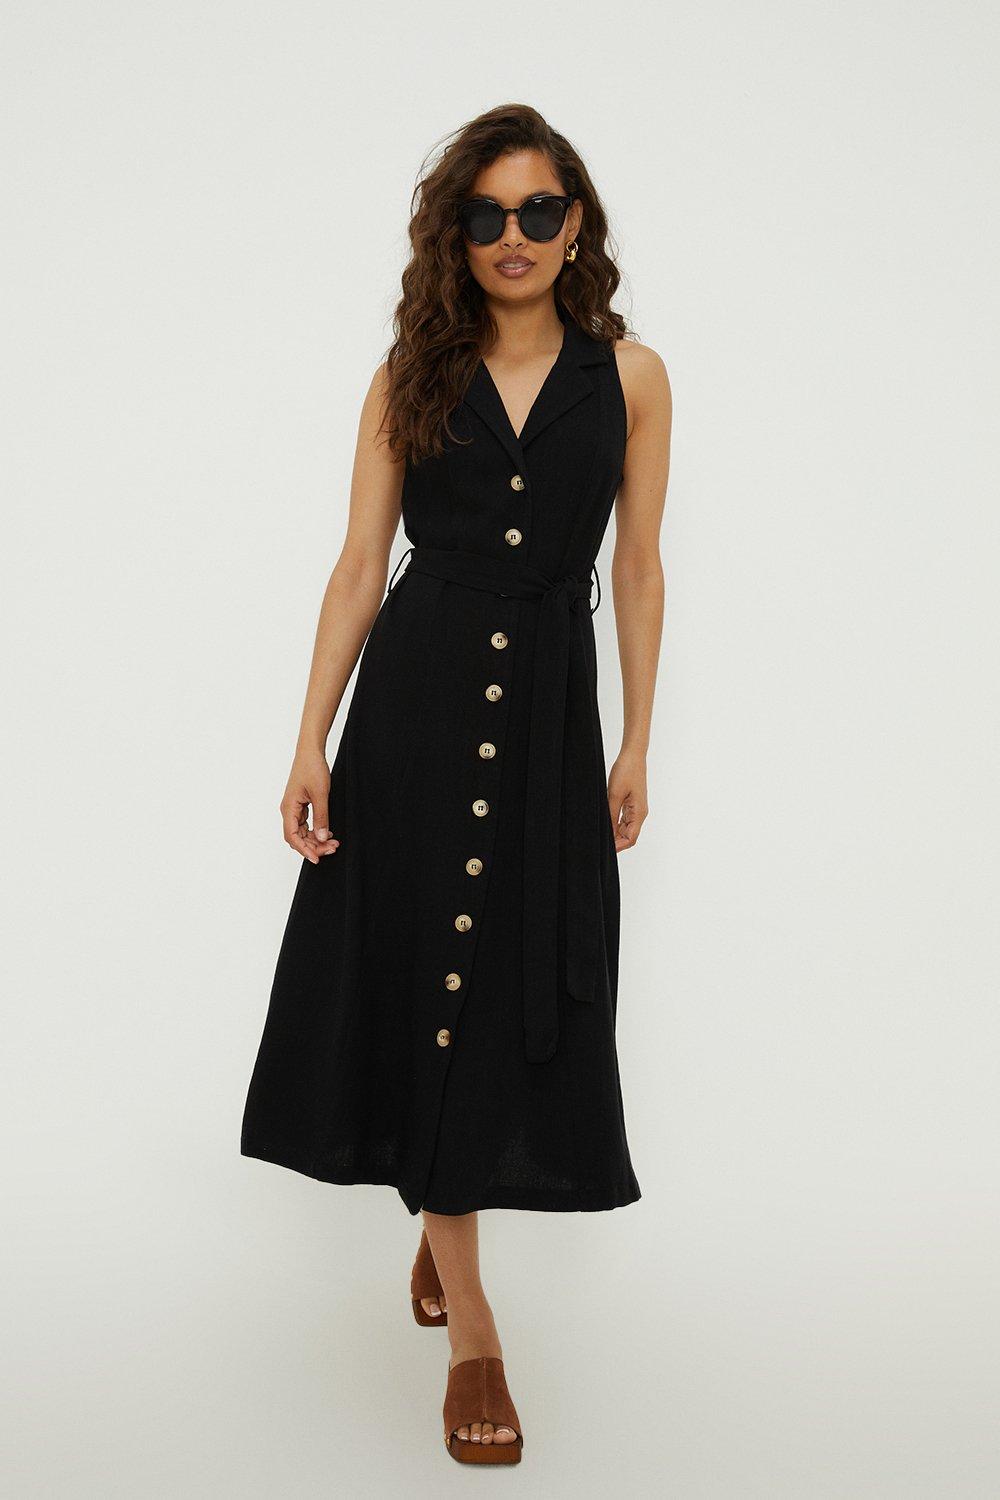 Women’s Petite Linen Button Front Sleeveless Dress - black - 8